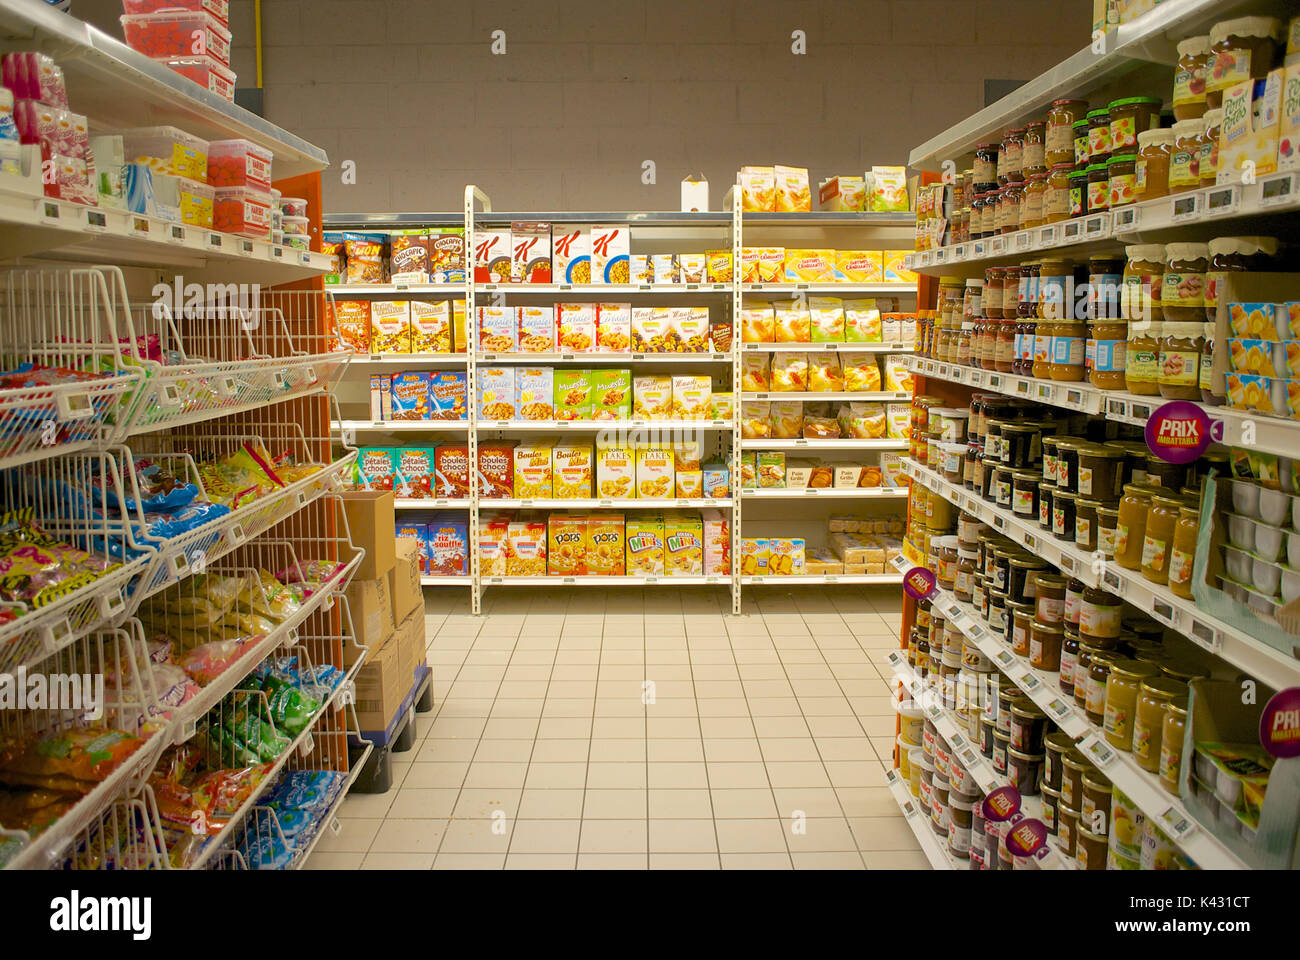 Netto supermarket shelves, France Stock Photo